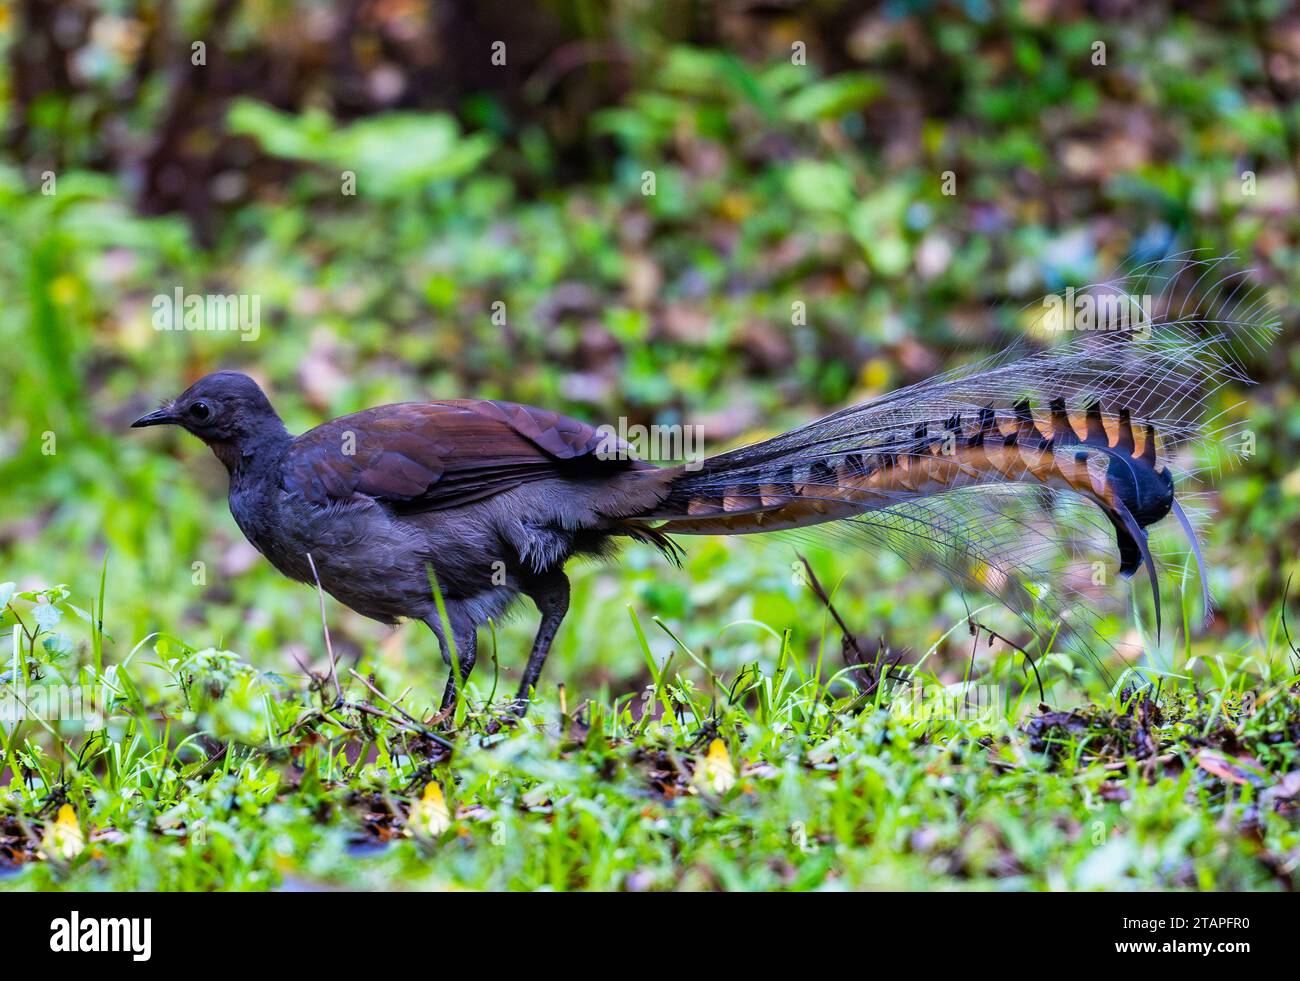 Ein vorzüglicher männlicher Lyrebird (Menura novaehollandiae) mit schickem langem Schwanz, der auf dem Feld auf Nahrungssuche ist. Budderoo National Park, New South Wales, Australien. Stockfoto